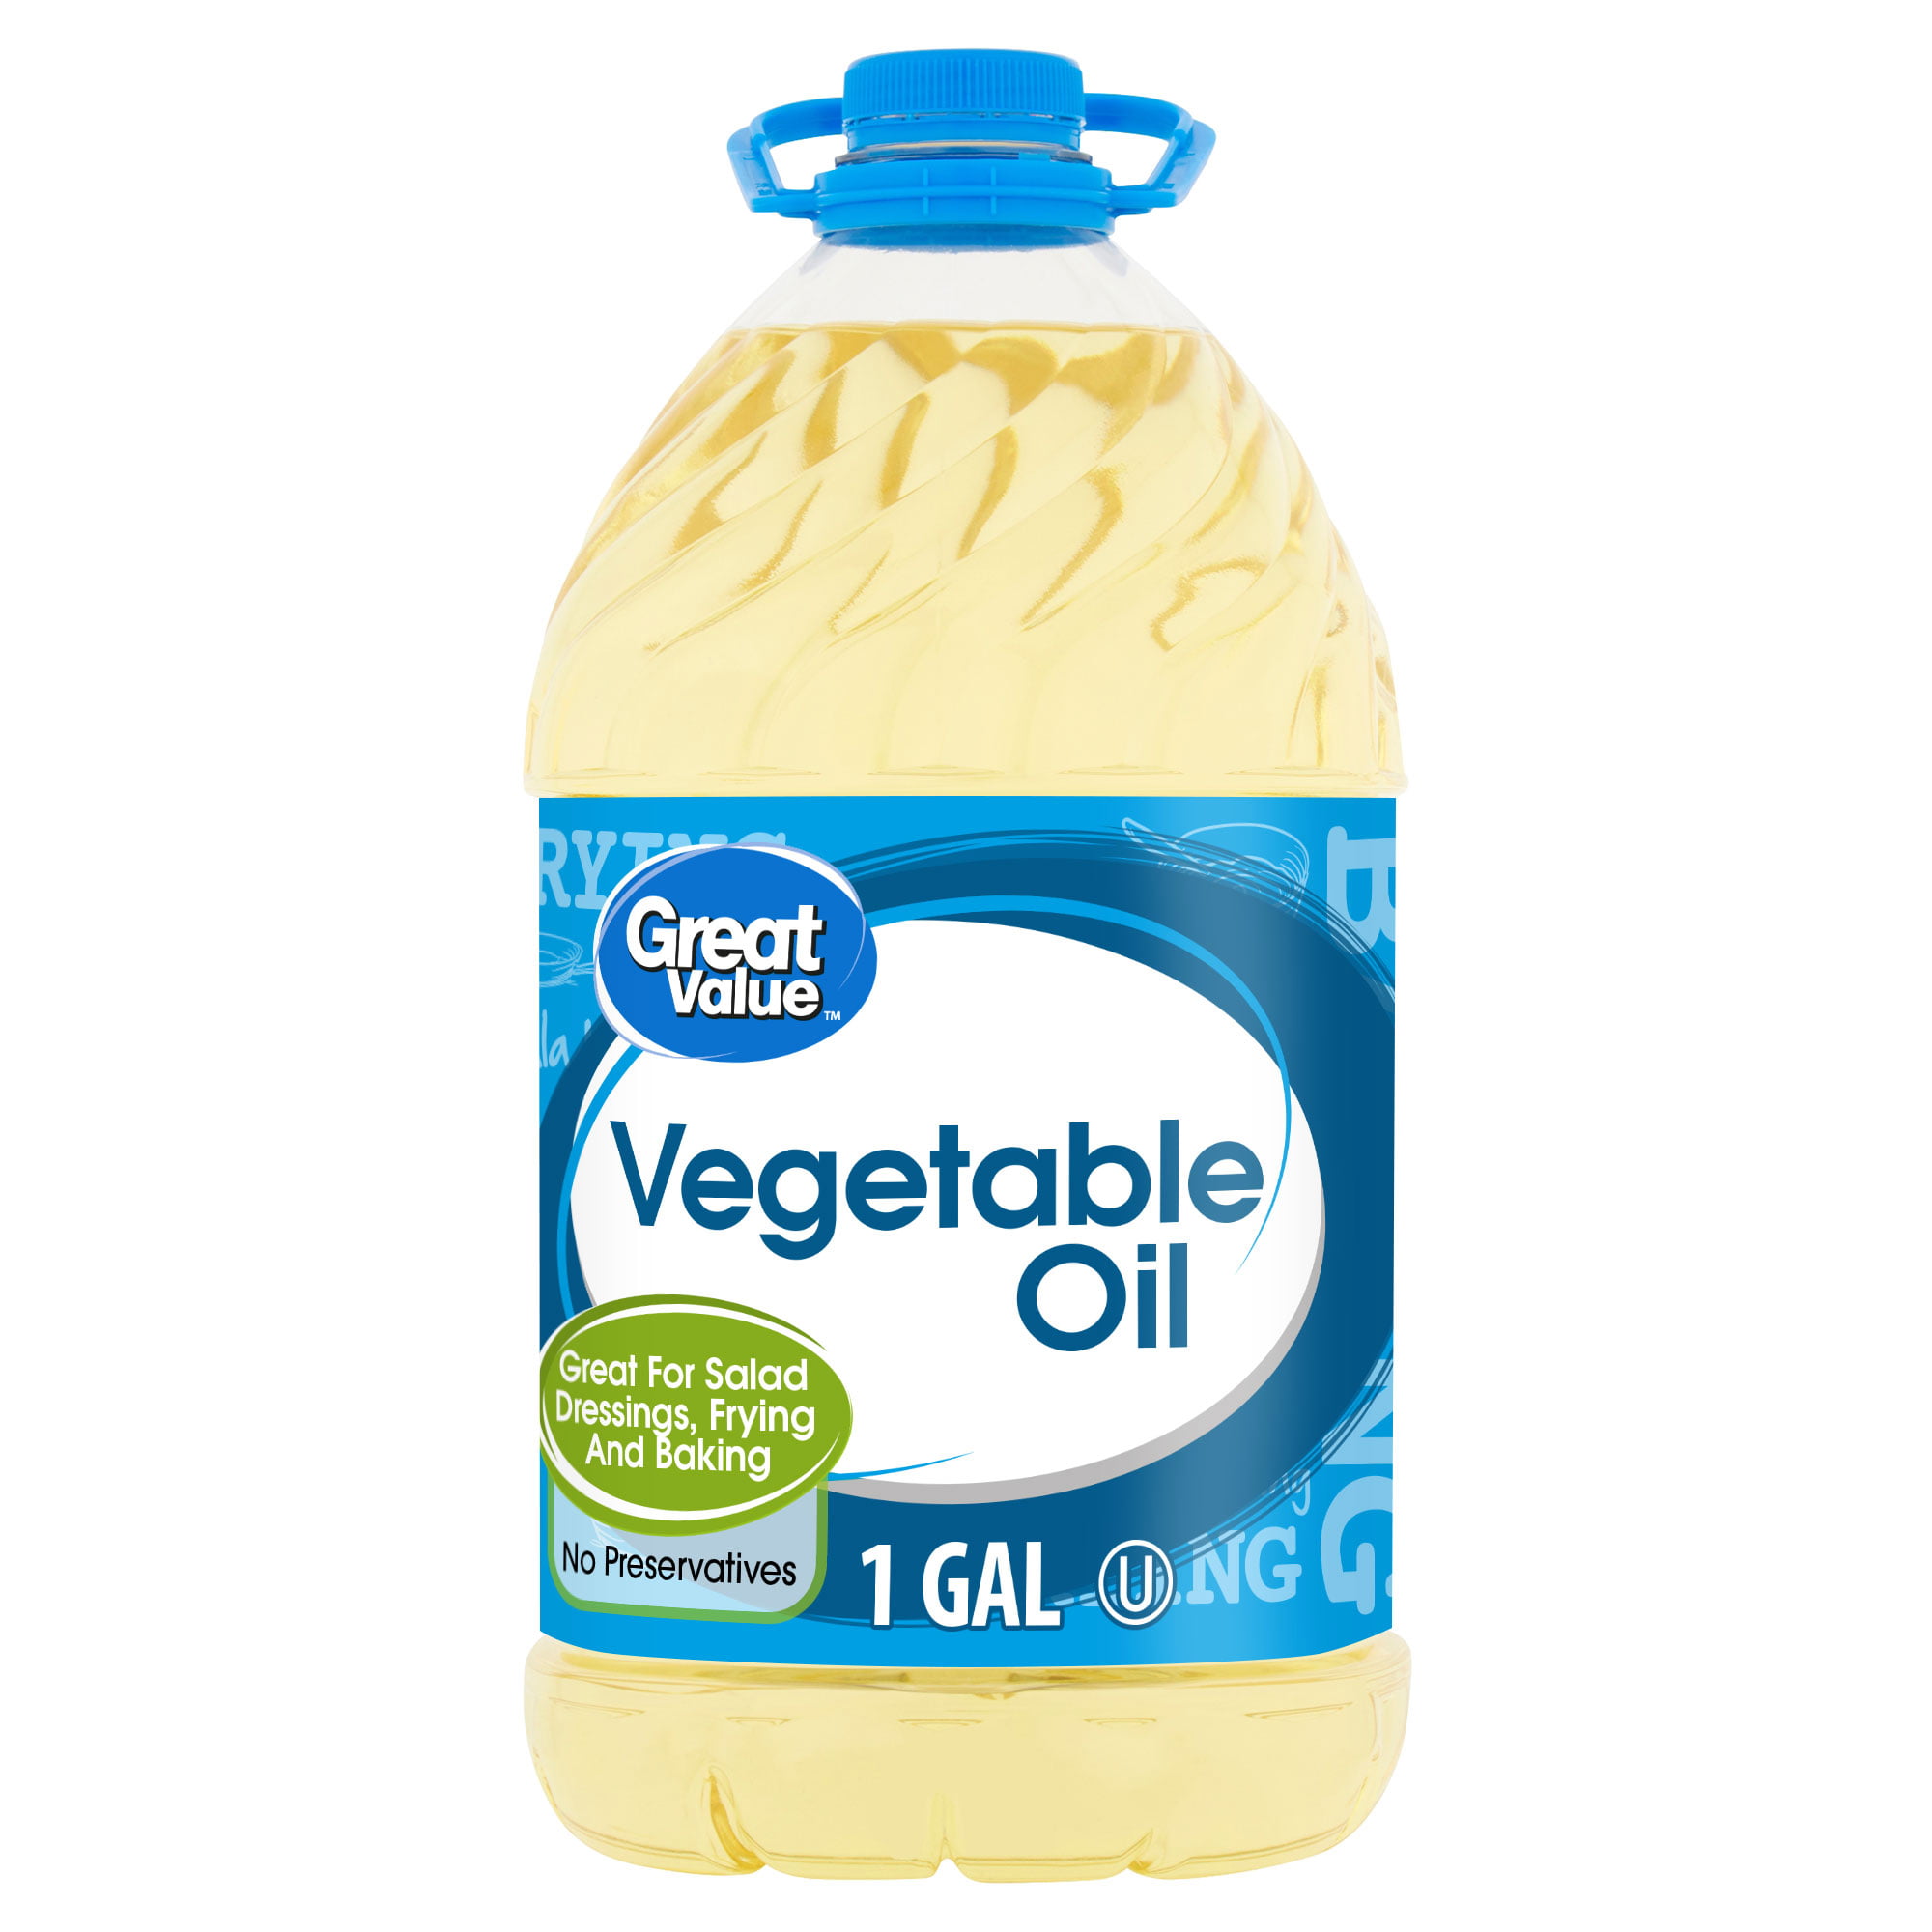 Great Value Vegetable Oil, 1 gal - Walmart.com - Walmart.com